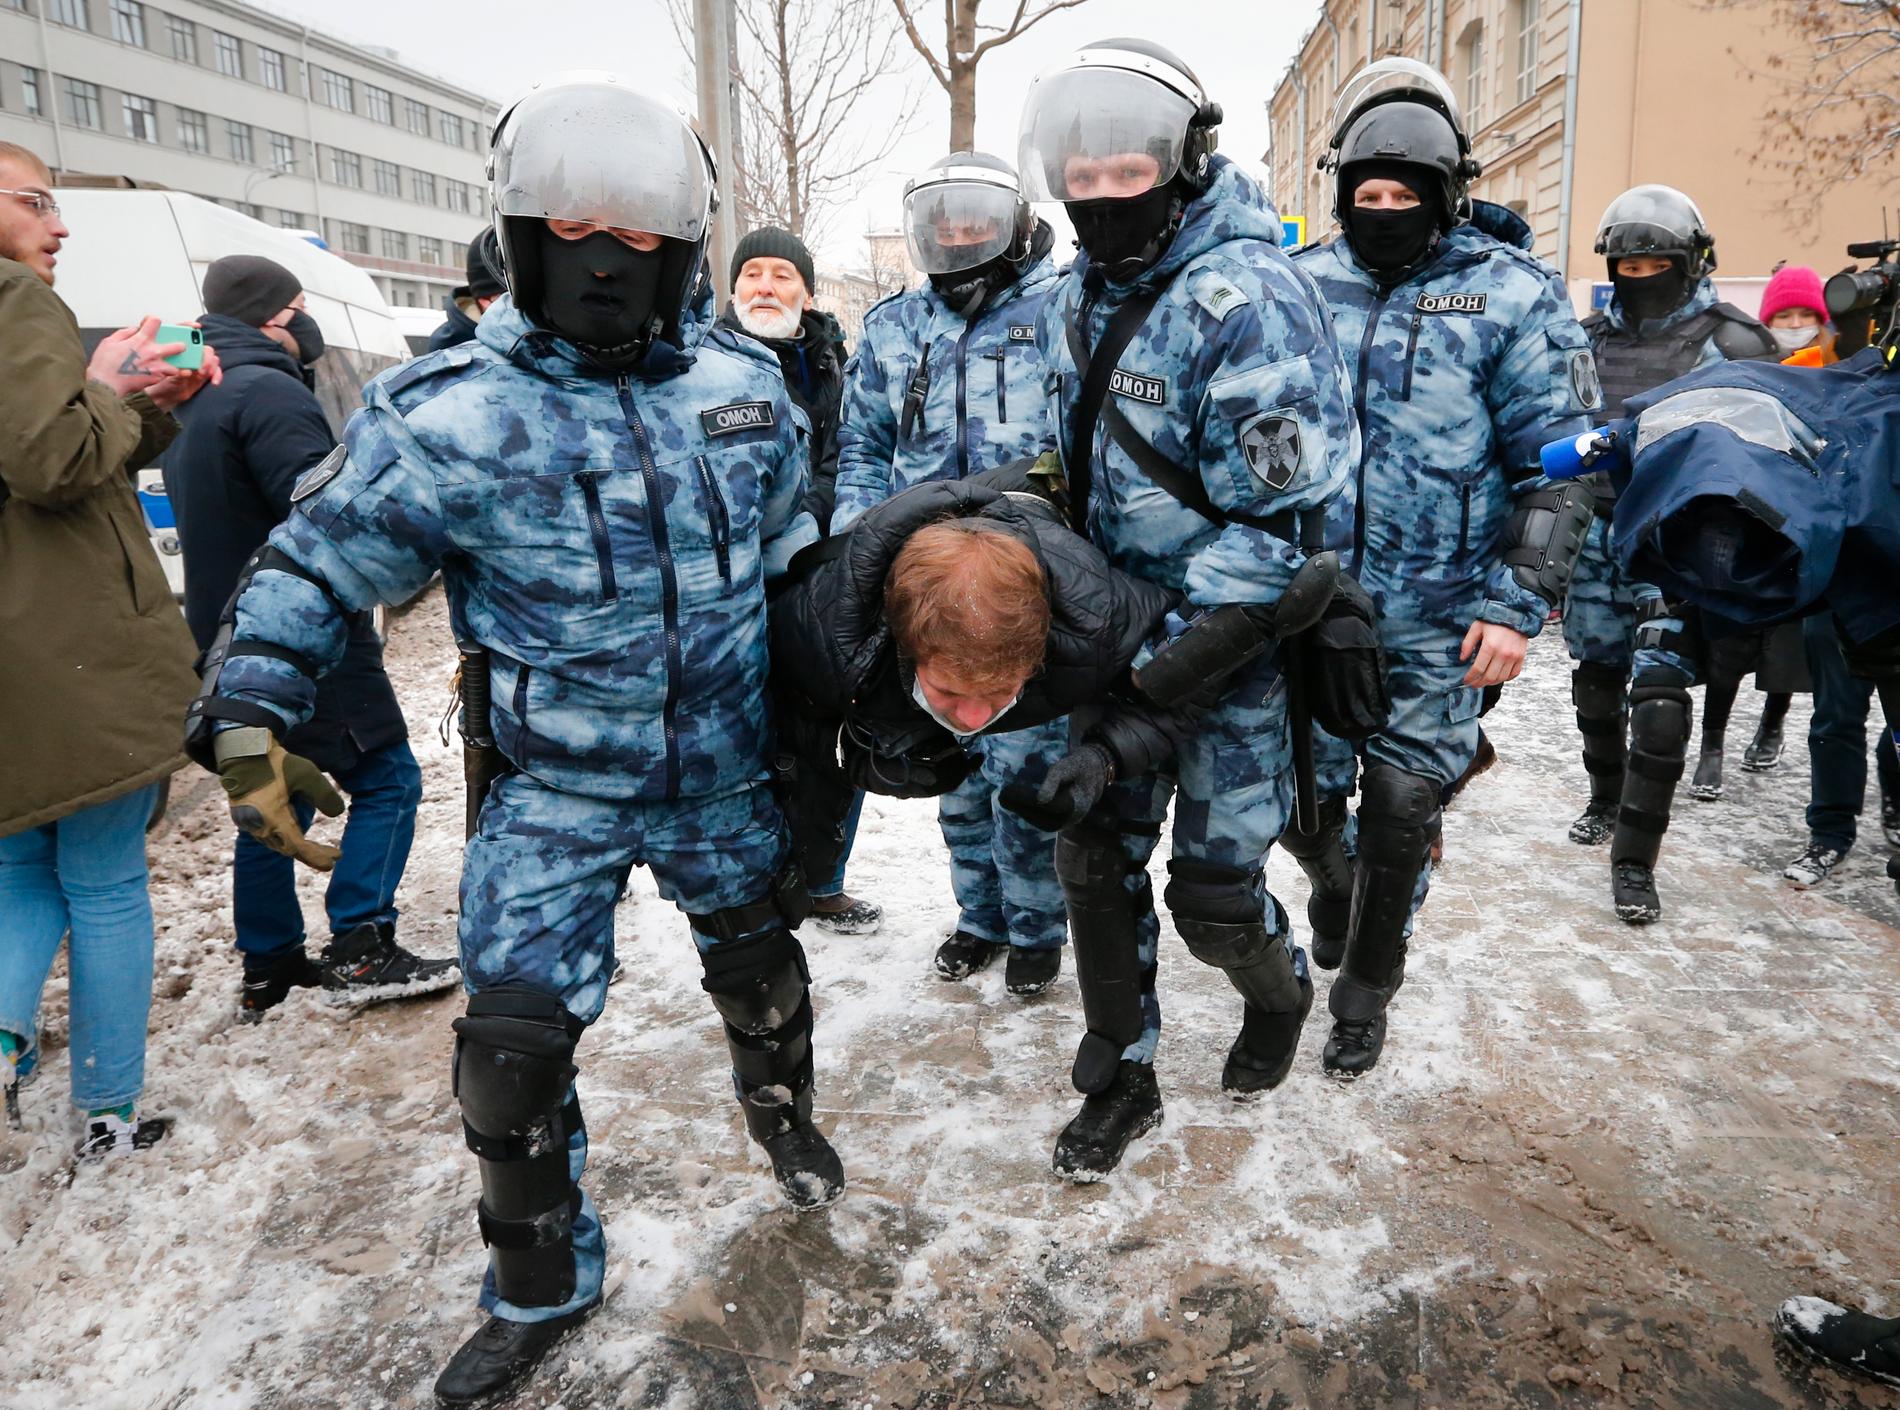 Polis för bort en man i Moskva.